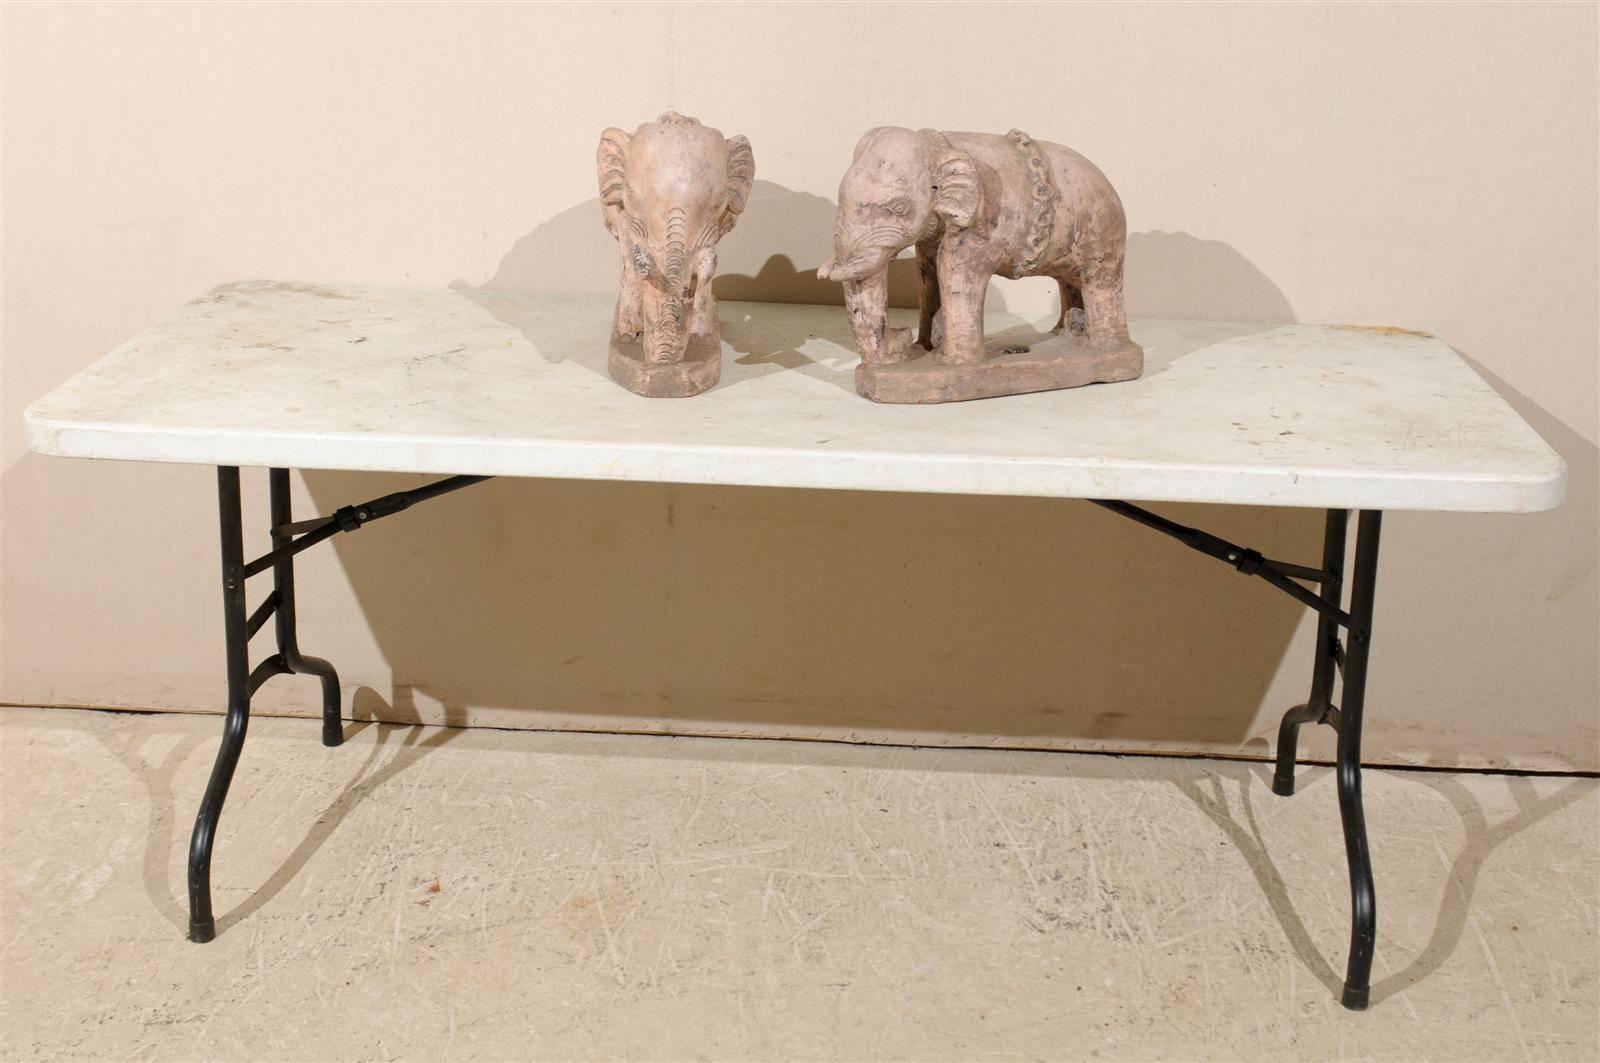 Ein Paar britische Terrakotta-Elefanten aus der Kolonialzeit, Indien, aus dem frühen 20. Jahrhundert, mit schön ausgearbeiteten Details. Diese eklektischen Statuen haben eine sehr subtile, schön gealterte Schicht aus blassrosa und beiger Farbe mit